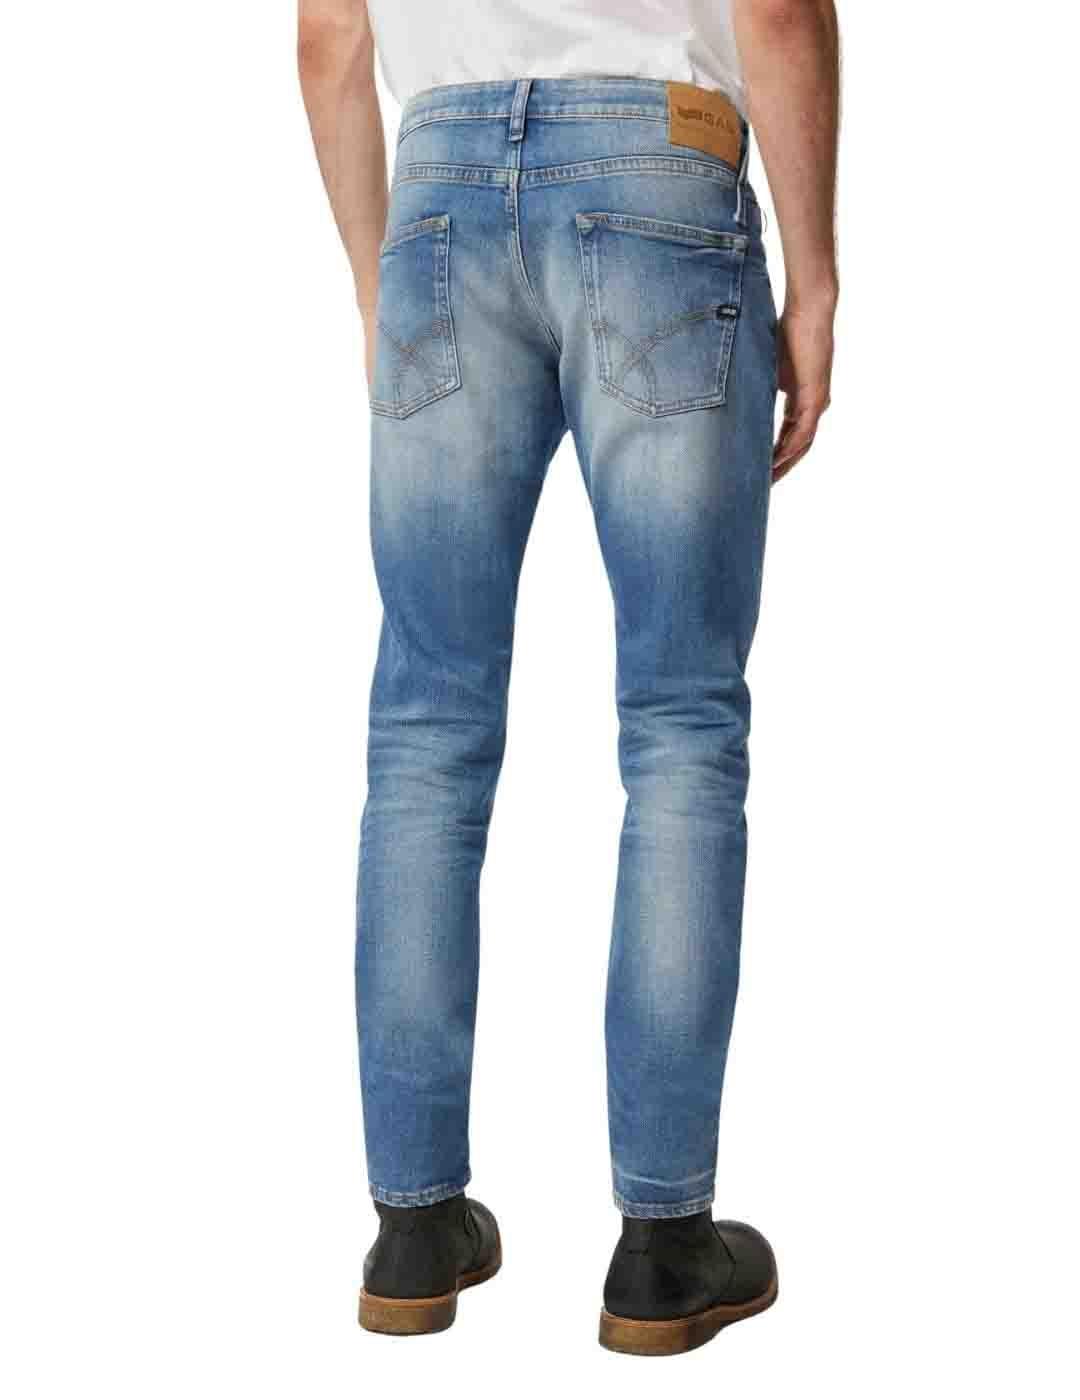 Pantalón Gas Jeans Norton Carrot WW48 elásticos hombre